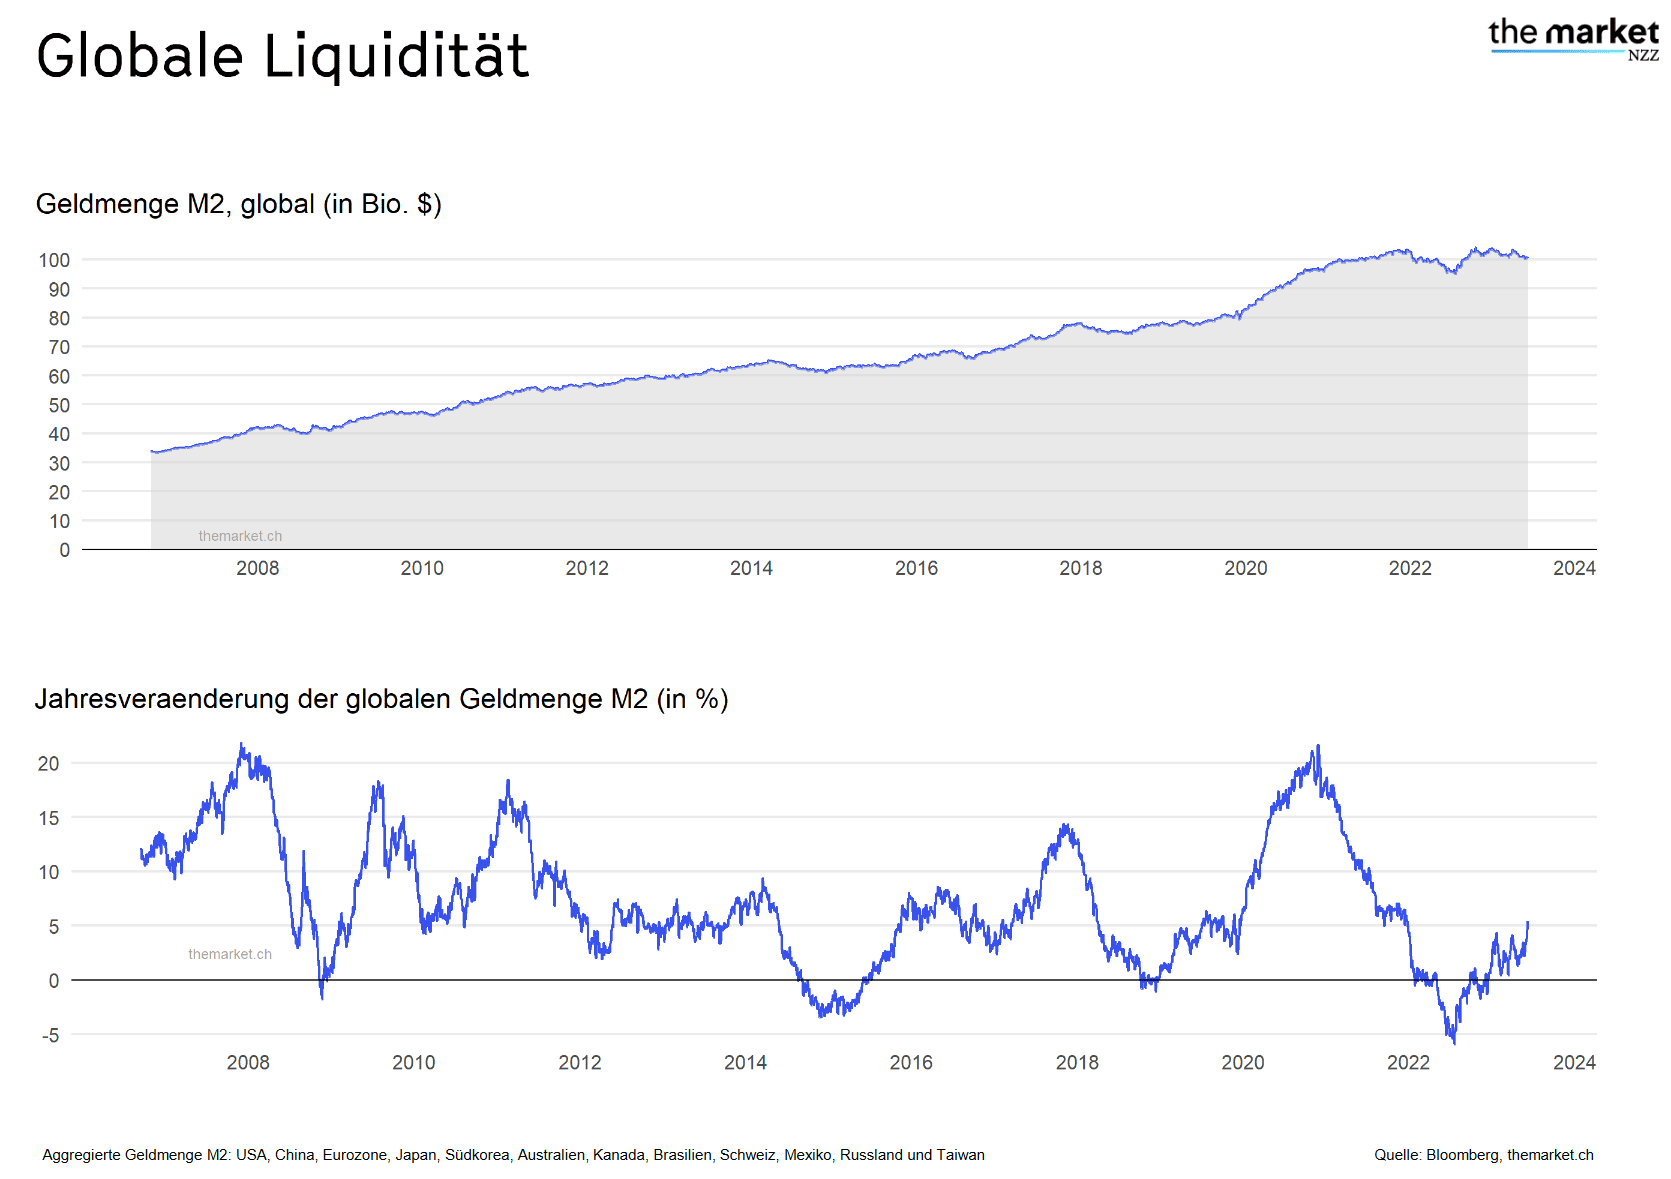 Wereldwijde liquiditeit en jaarlijkse verandering van de mondiale geldhoeveelheid M2.